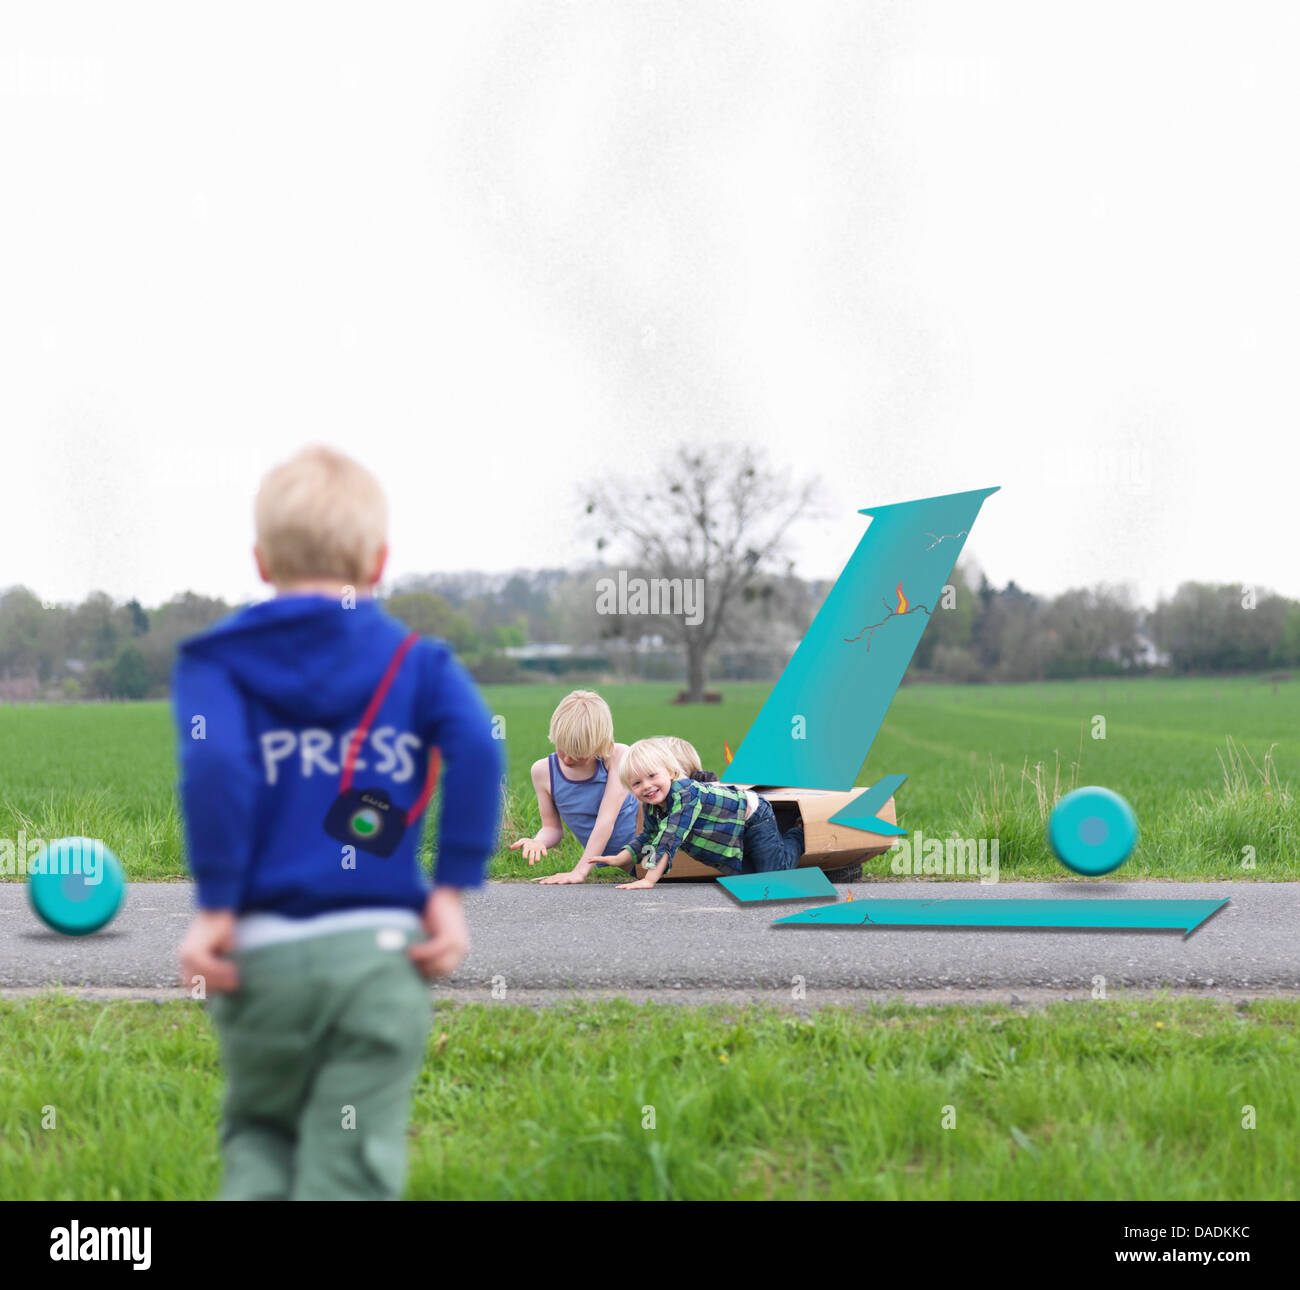 Kinder spielen zusammen in gebrochenen Flugzeugmodell Stockfoto